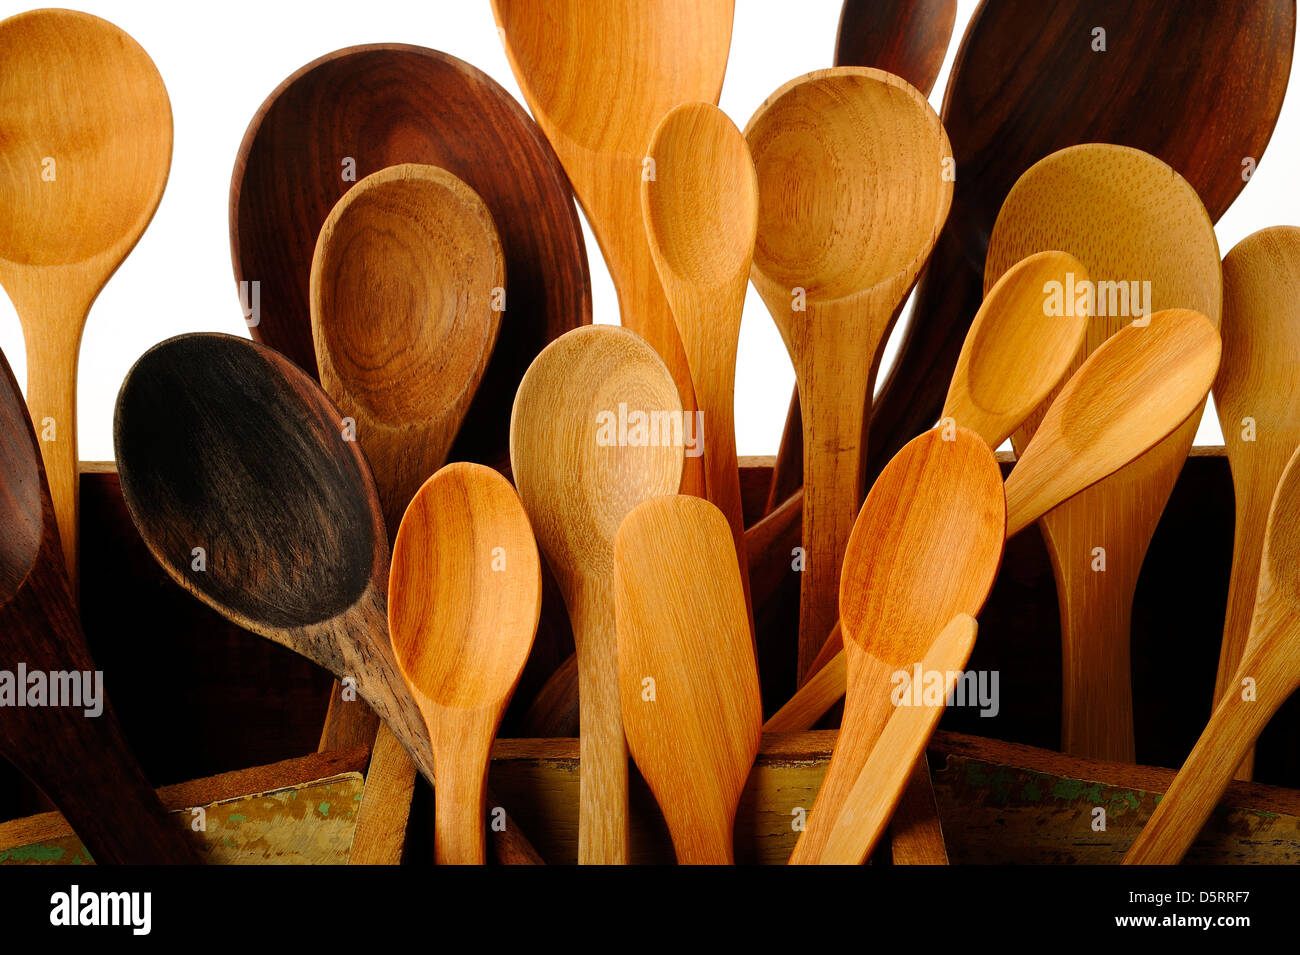 https://c8.alamy.com/compes/d5rrf7/coleccion-de-utensilios-de-cocina-de-madera-en-caja-de-madera-d5rrf7.jpg